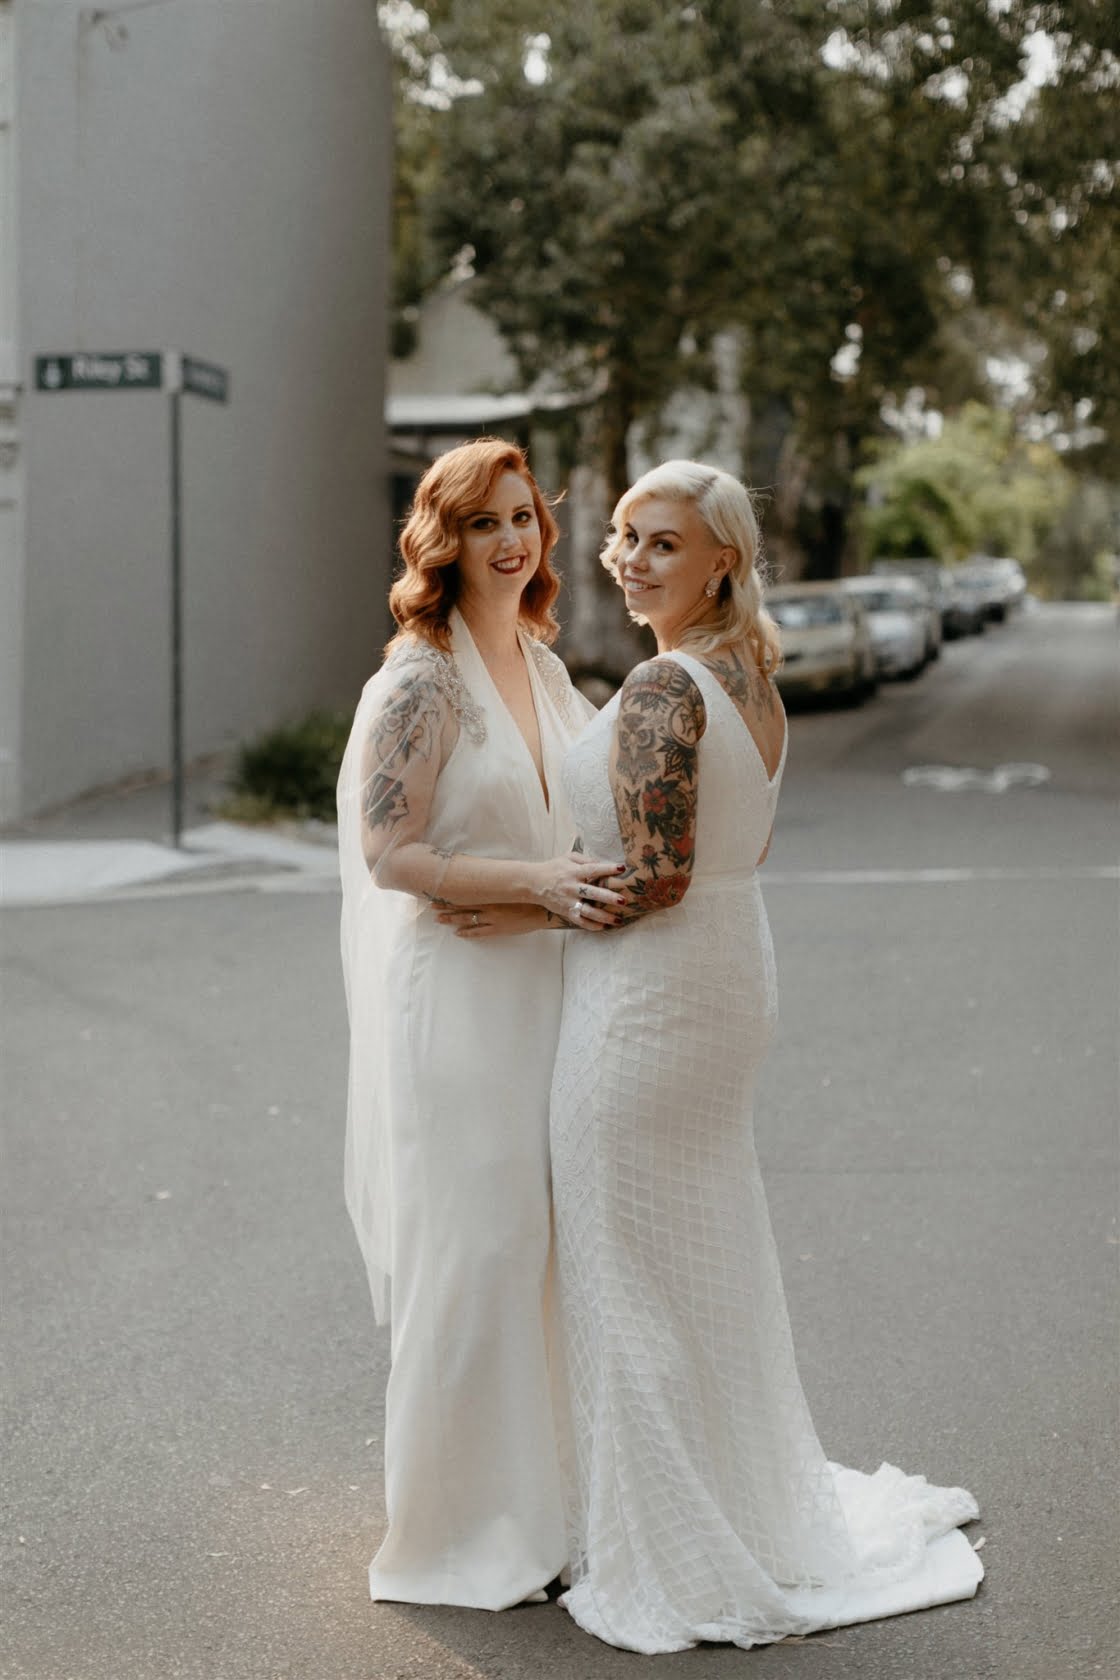 LAUREN & ALLI’S SYDNEY WEDDING – Hello May